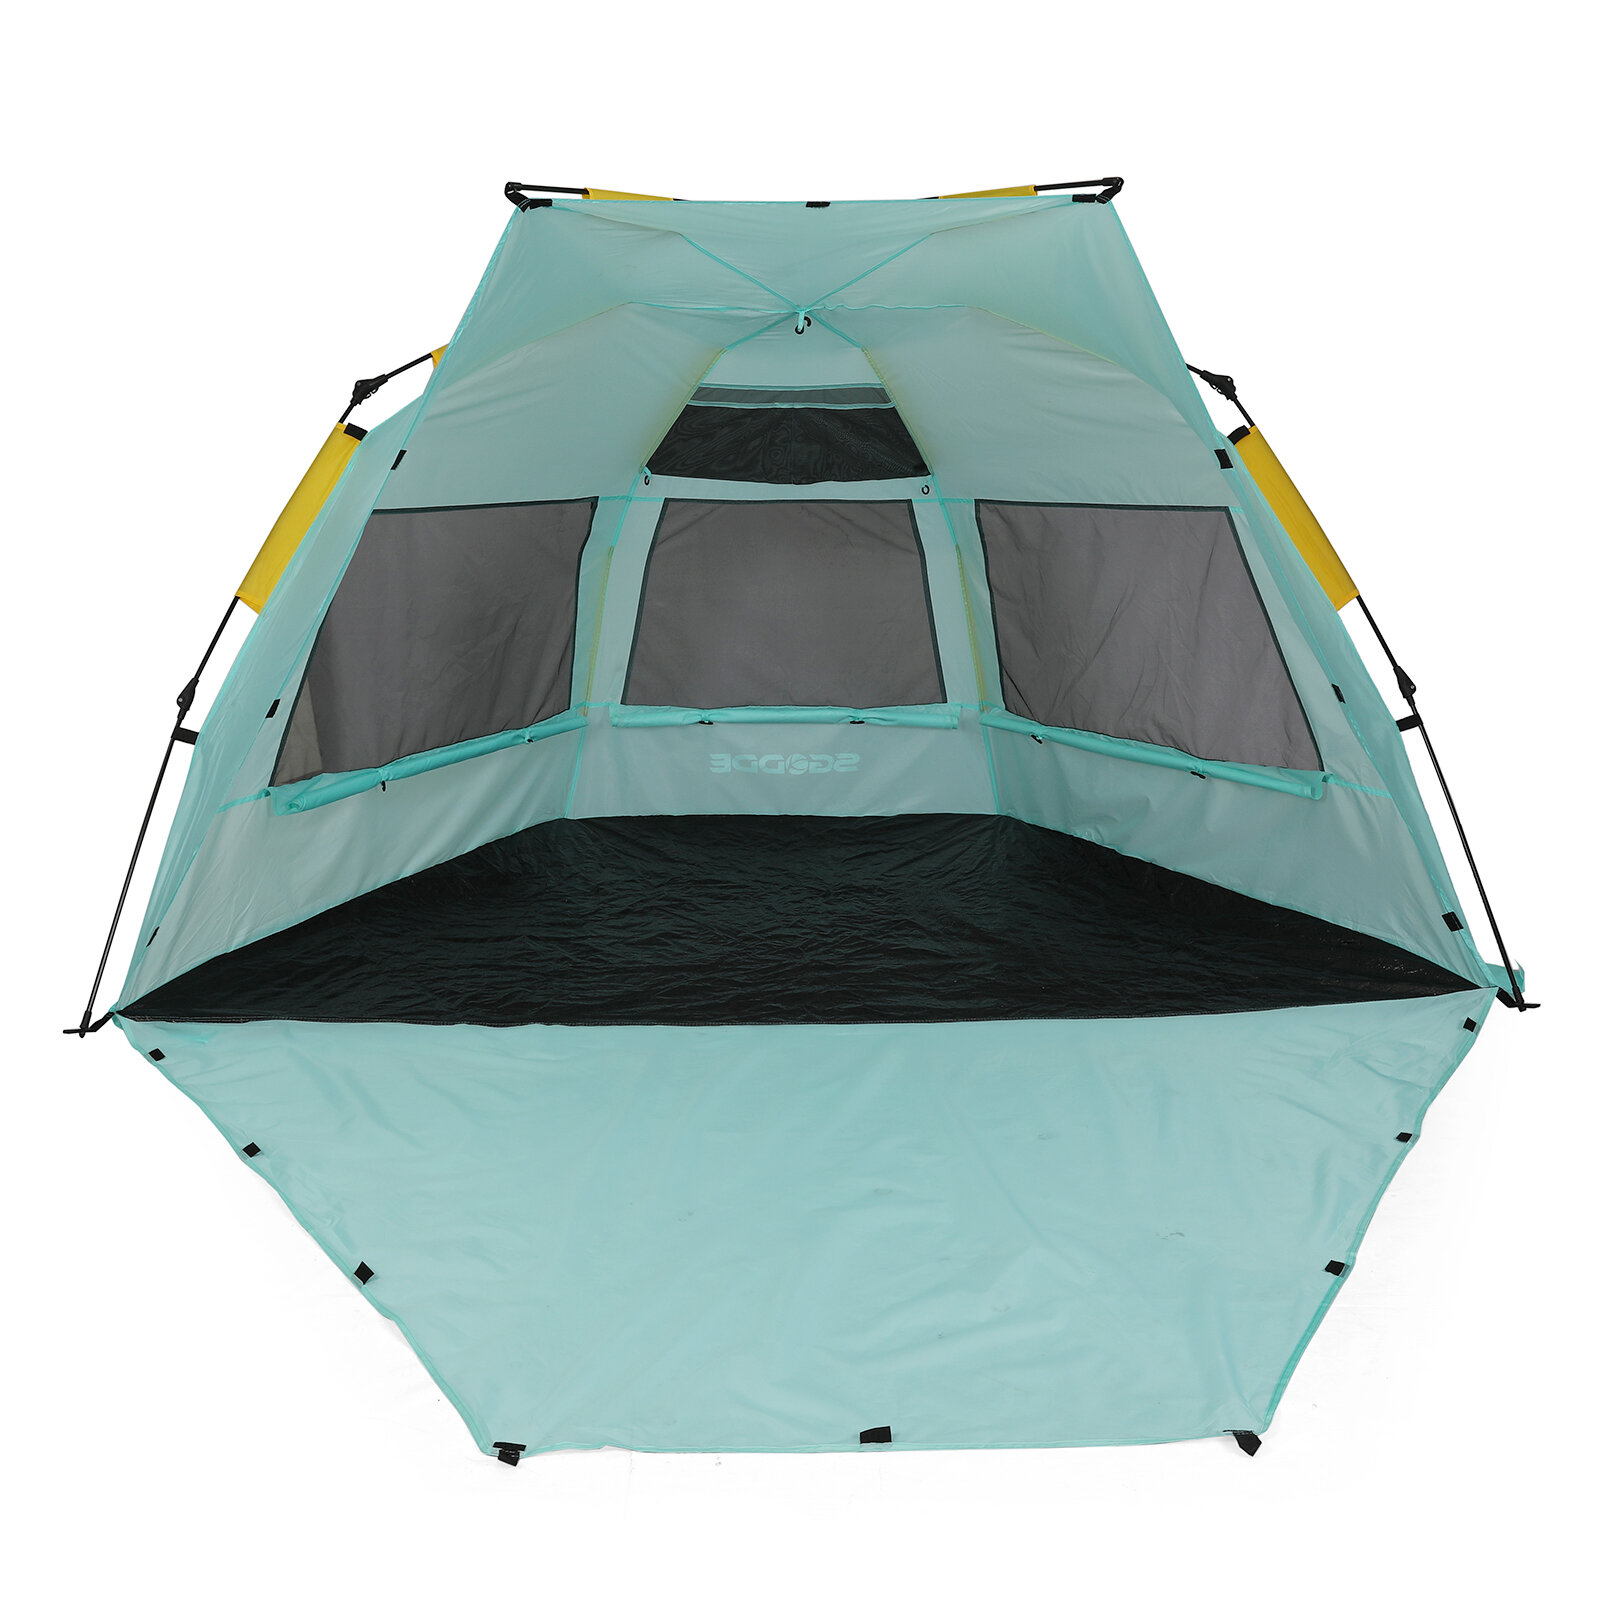 Tienda de campaña impermeable y resistente a los rayos UV UP50+ para camping y playa, con capacidad para 3-4 personas.